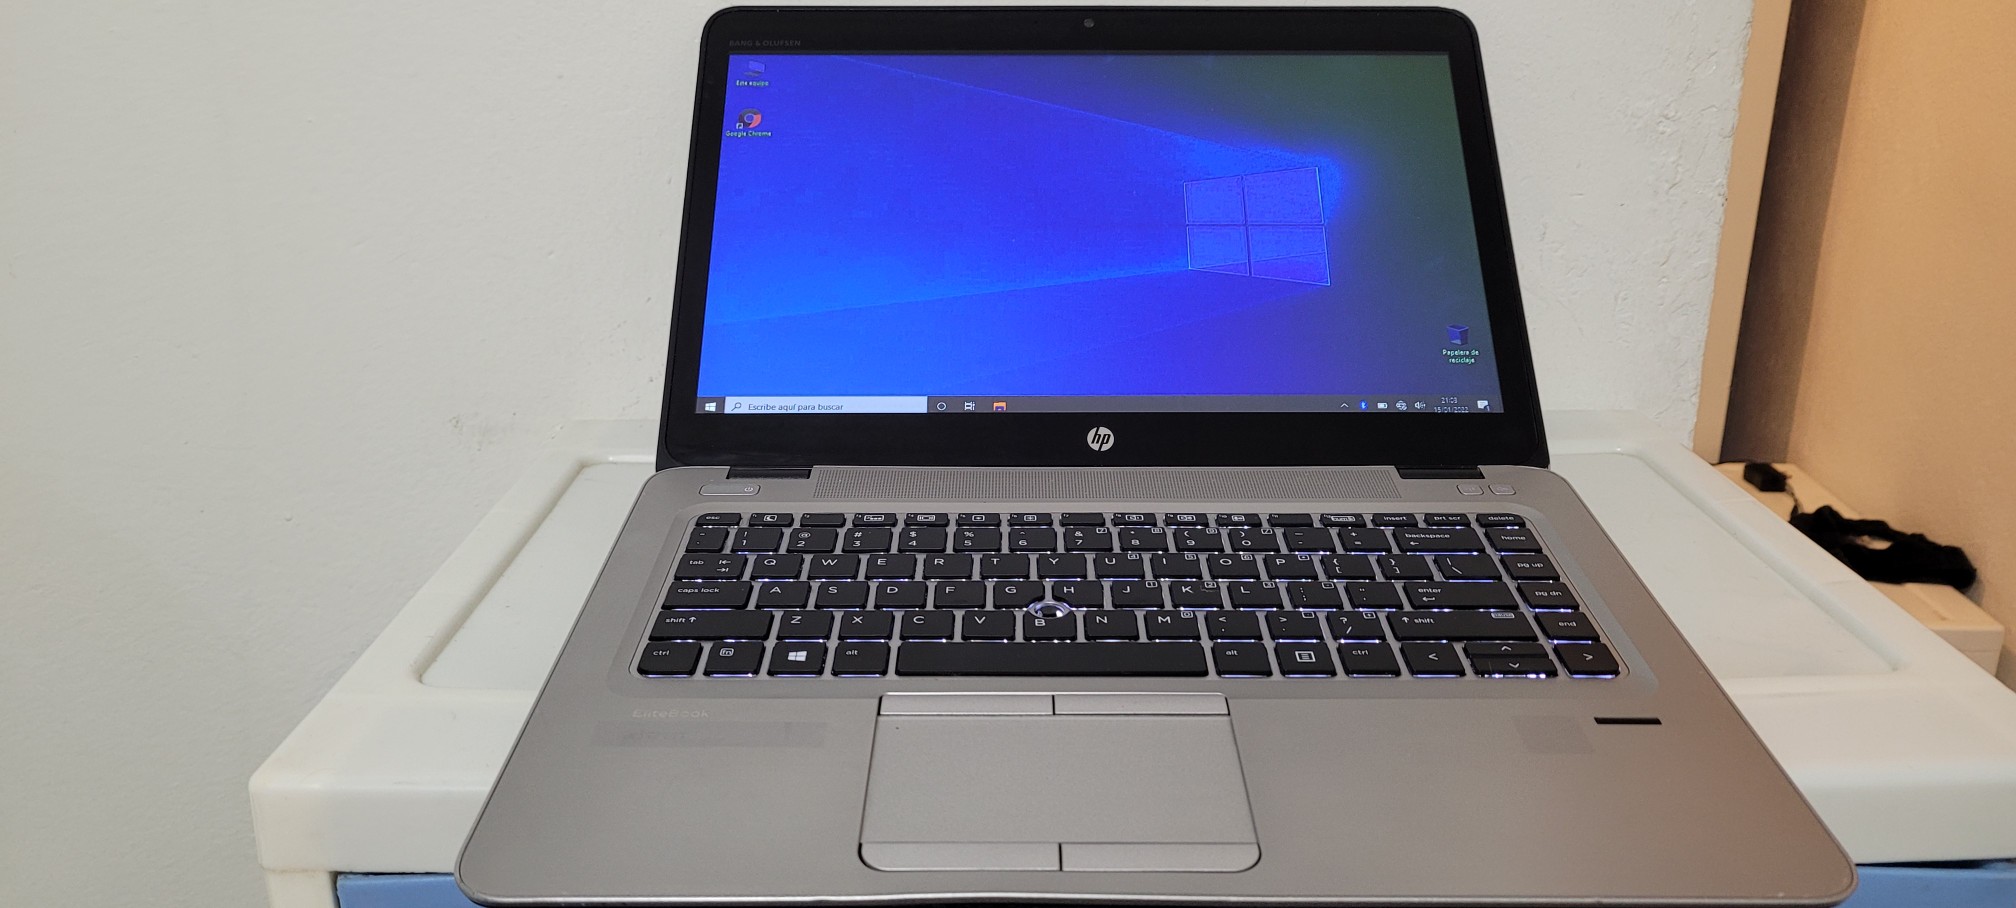 computadoras y laptops - Laptop hp Touch 14 Pulg Core i5 7ma Gen Ram 8gb ddr4 Dos Disco 128gb Y 320gb